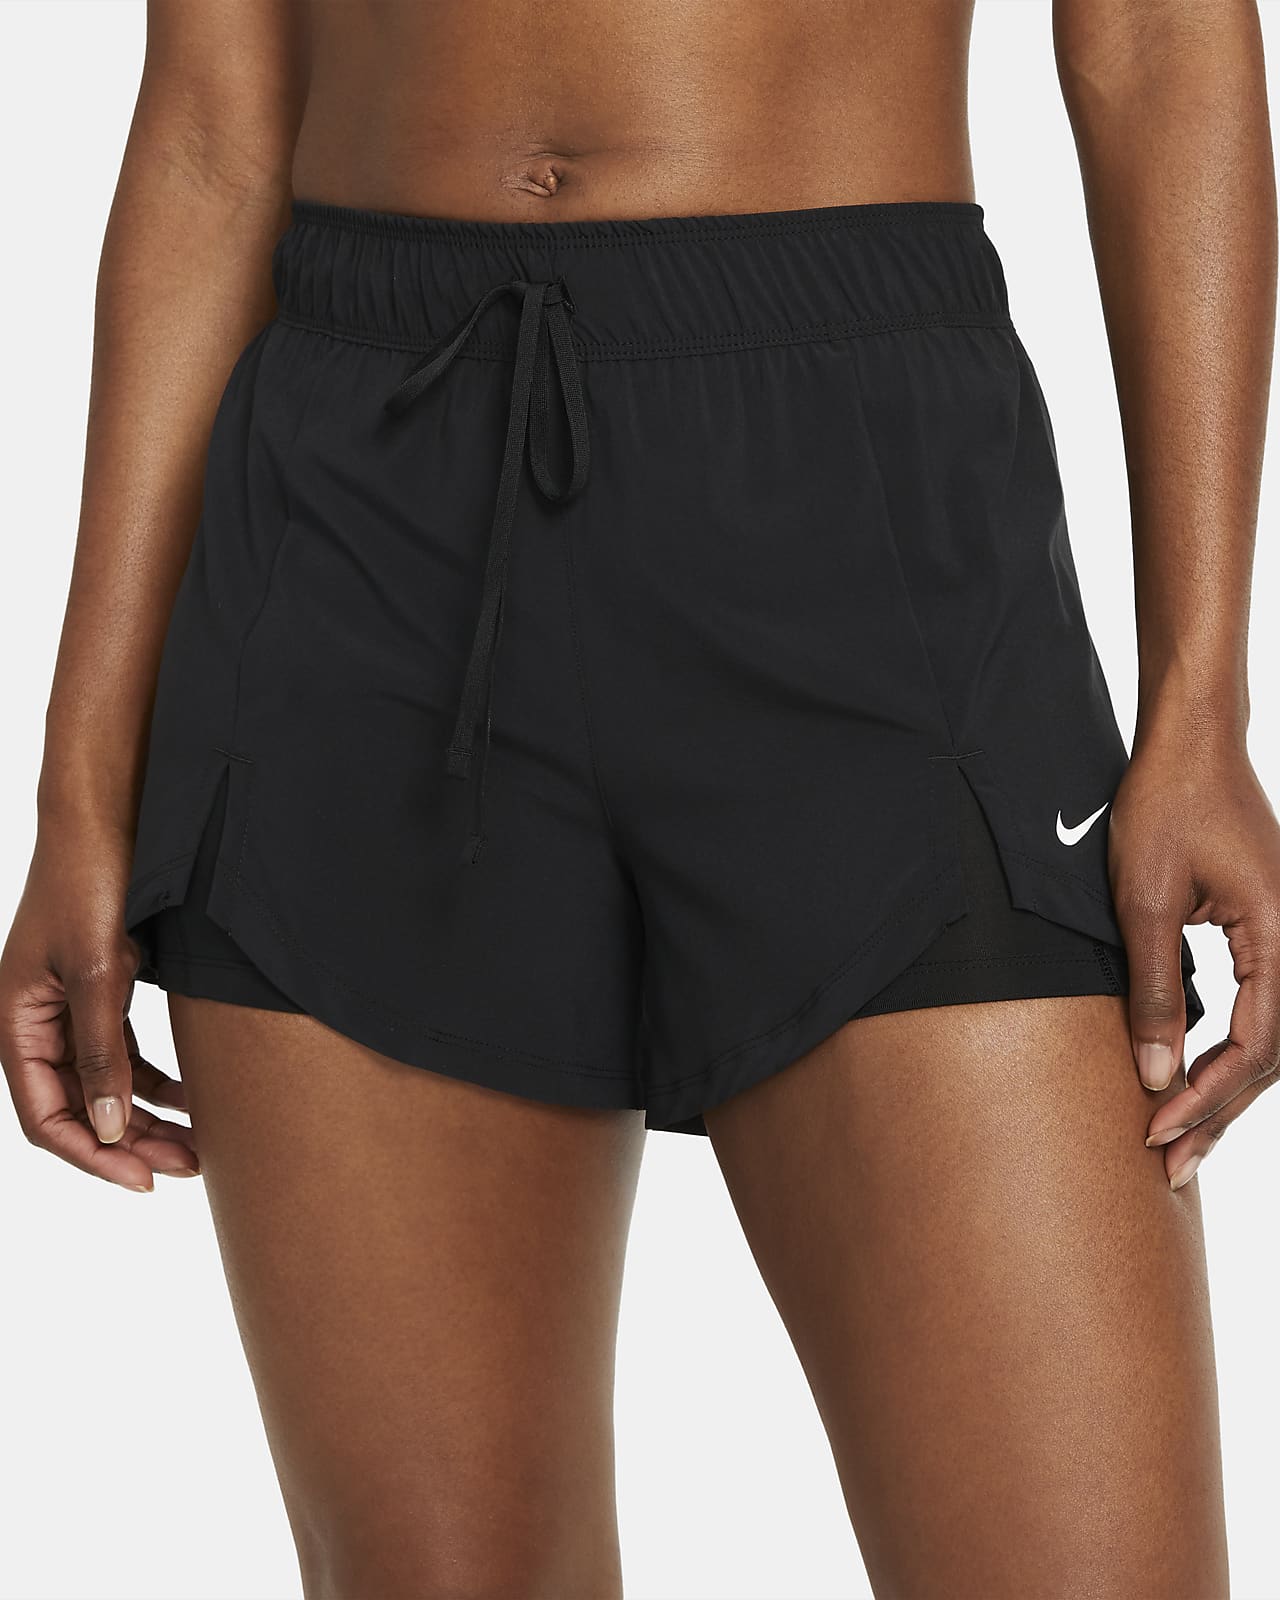 women's flex 2 in 1 shorts